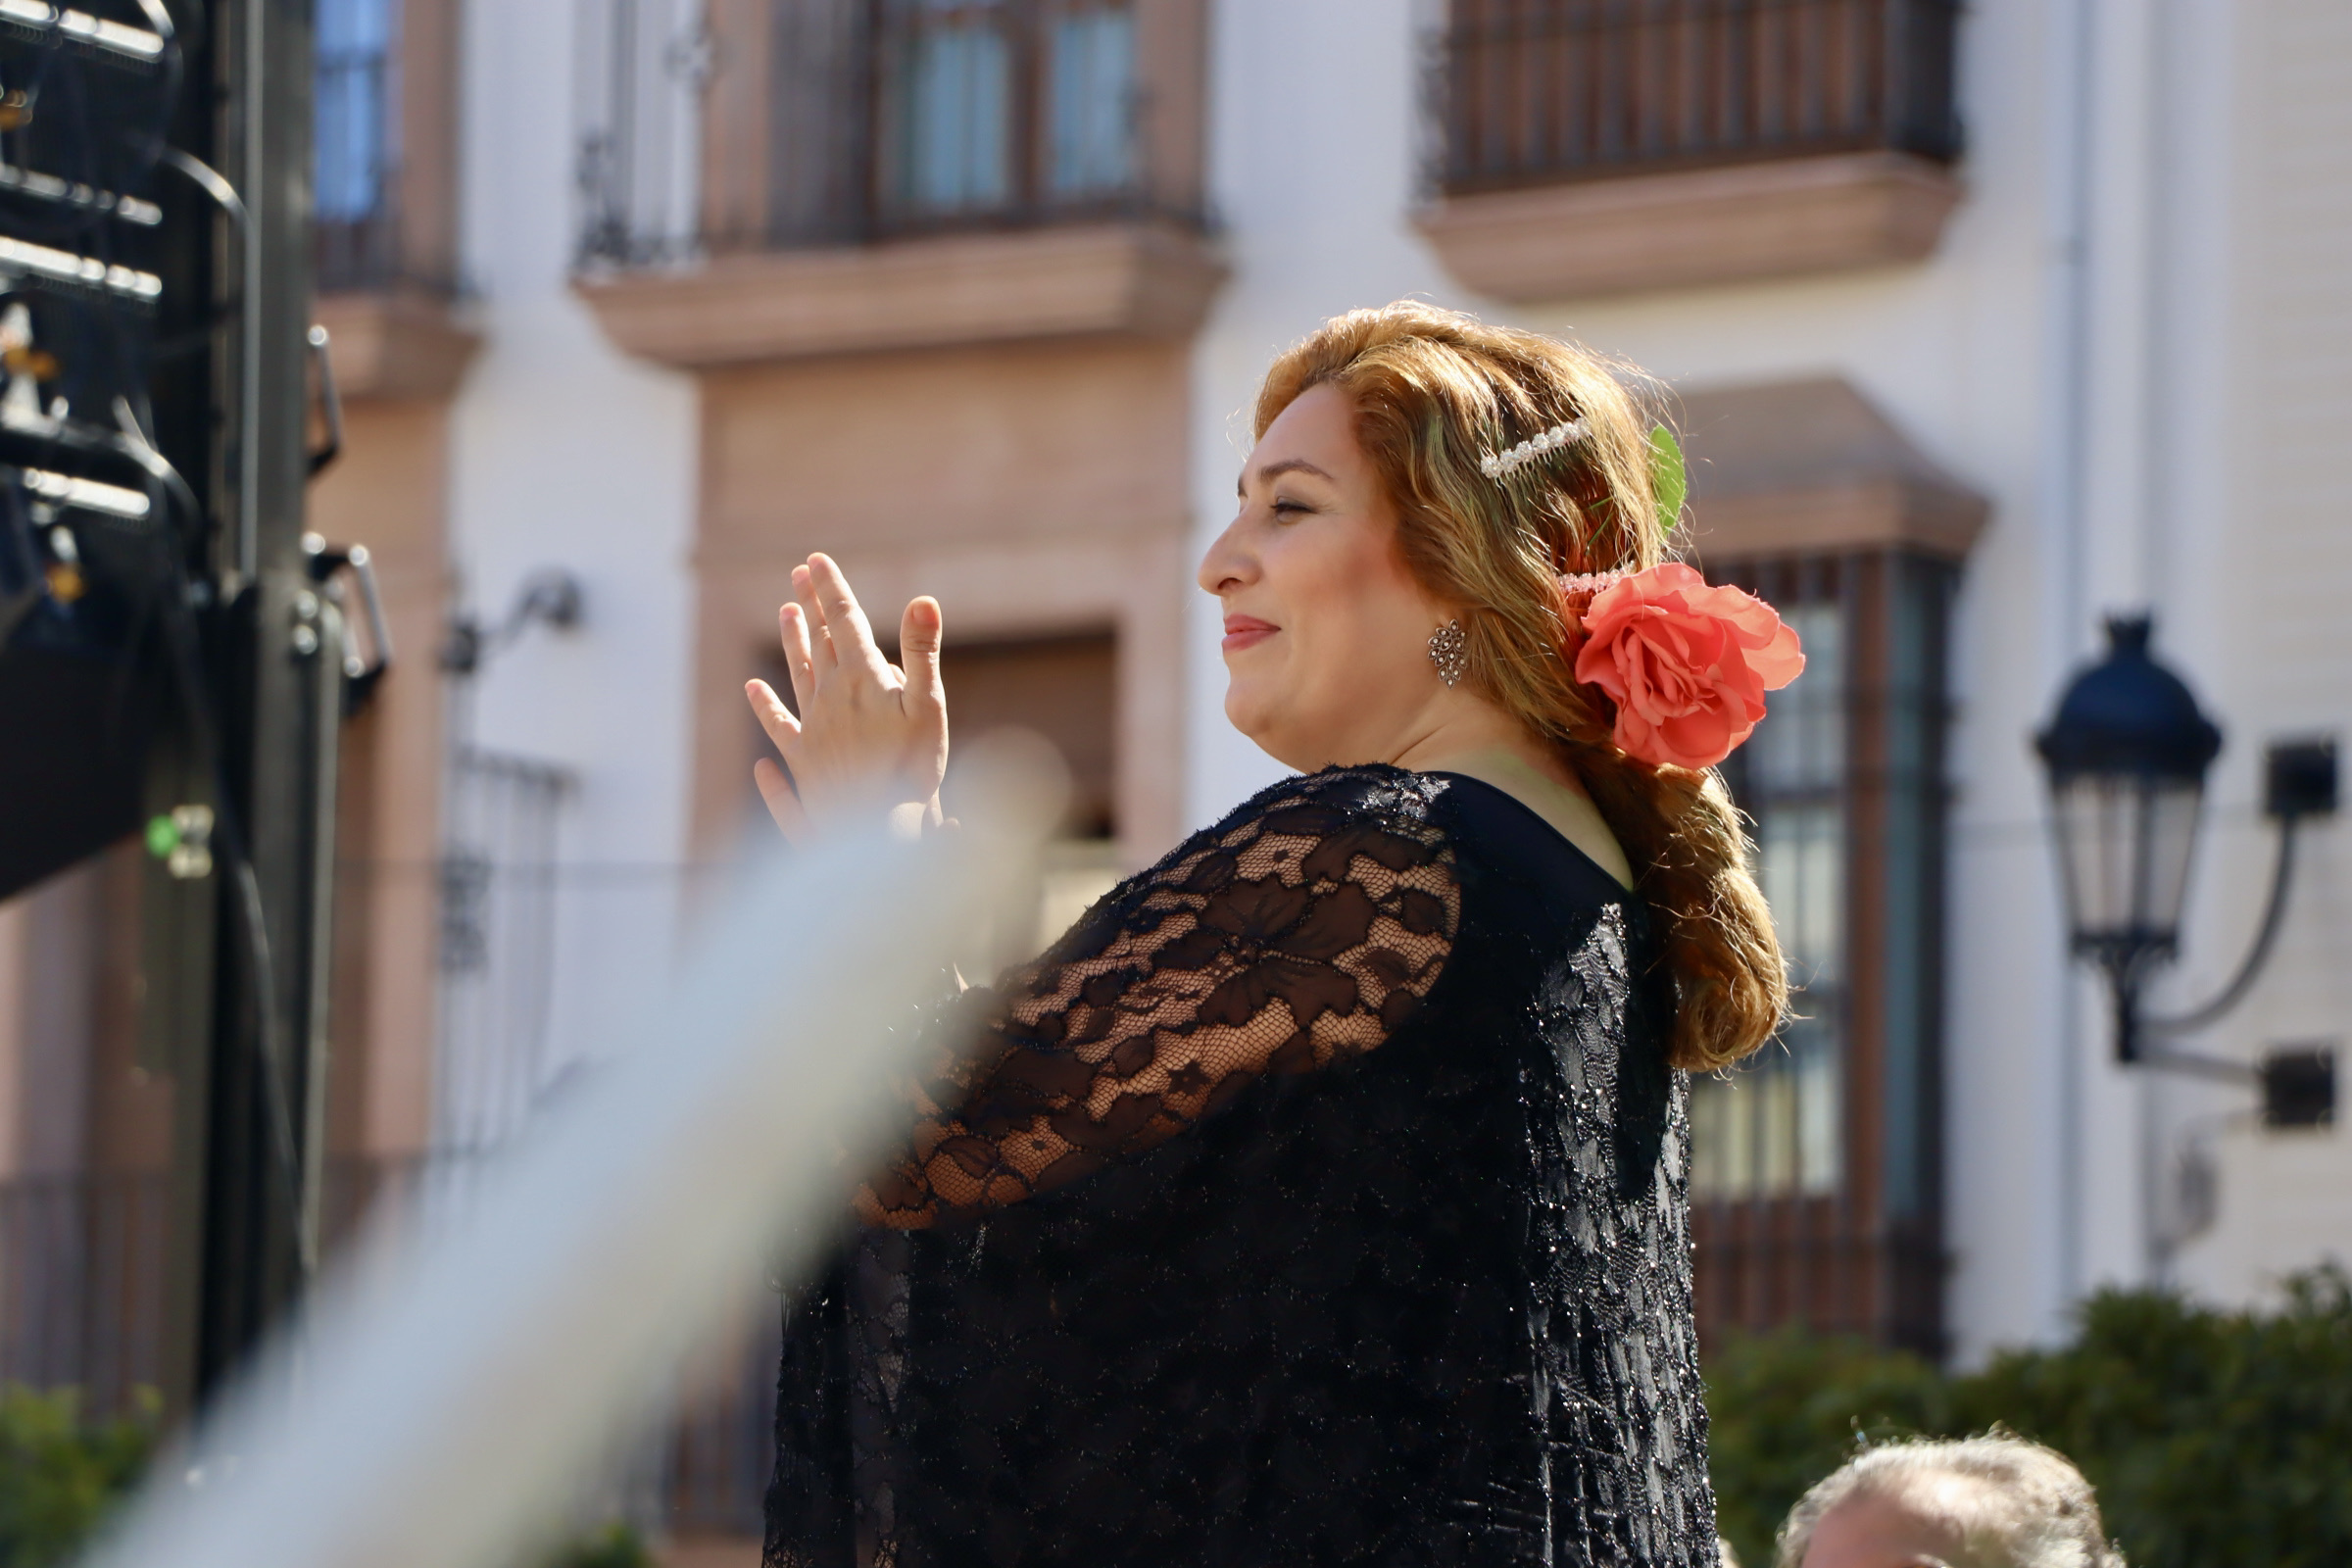 Día de Andalucía en Lucena: Estrella Morente en la Plaza Nueva